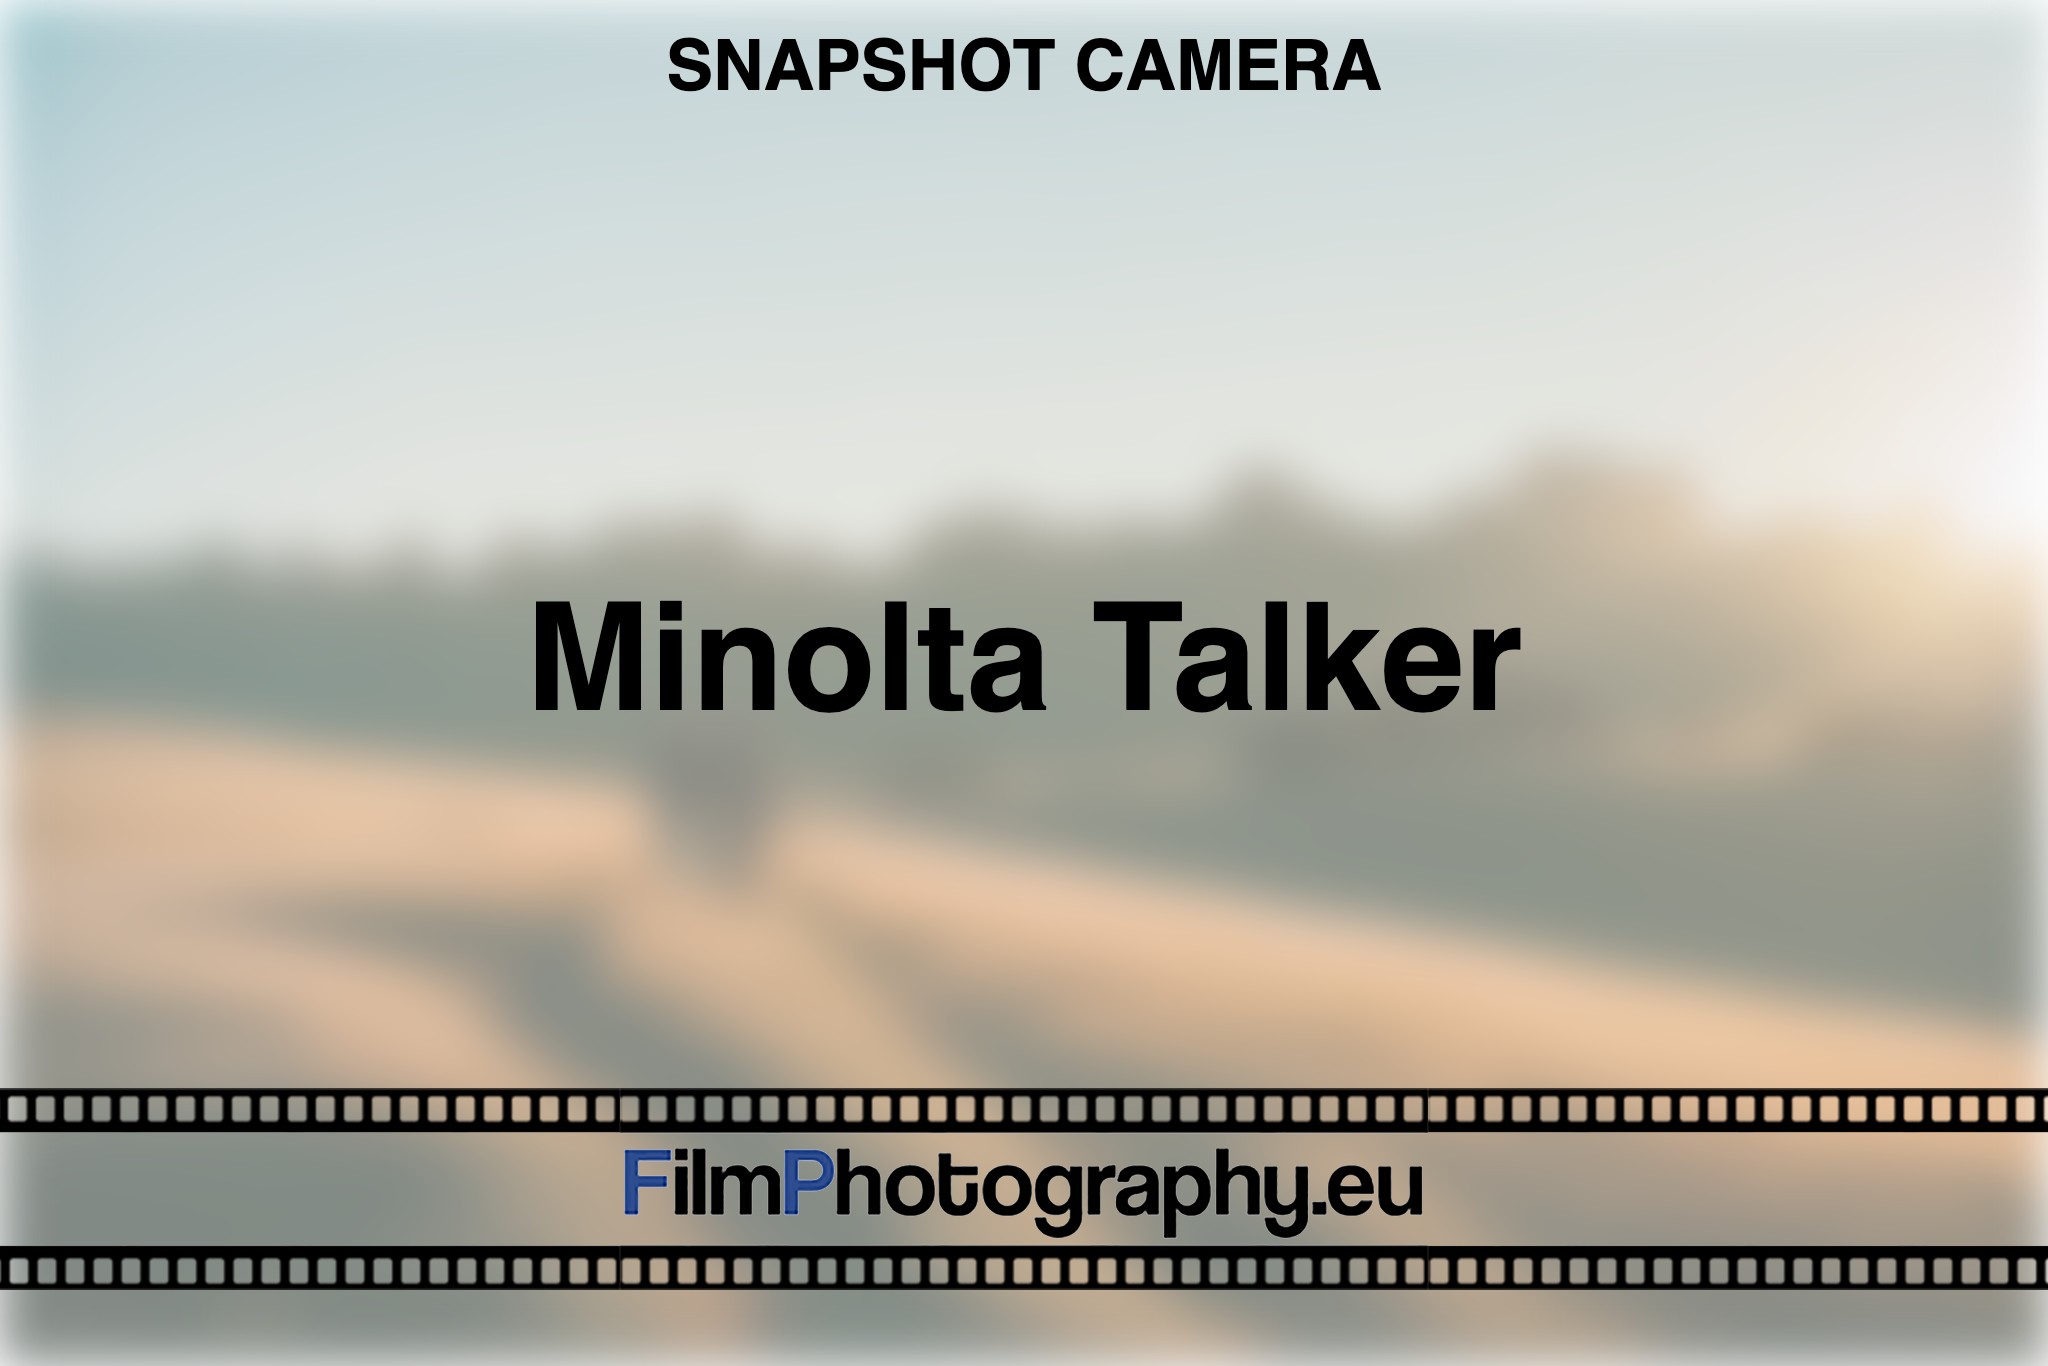 minolta-talker-snapshot-camera-bnv